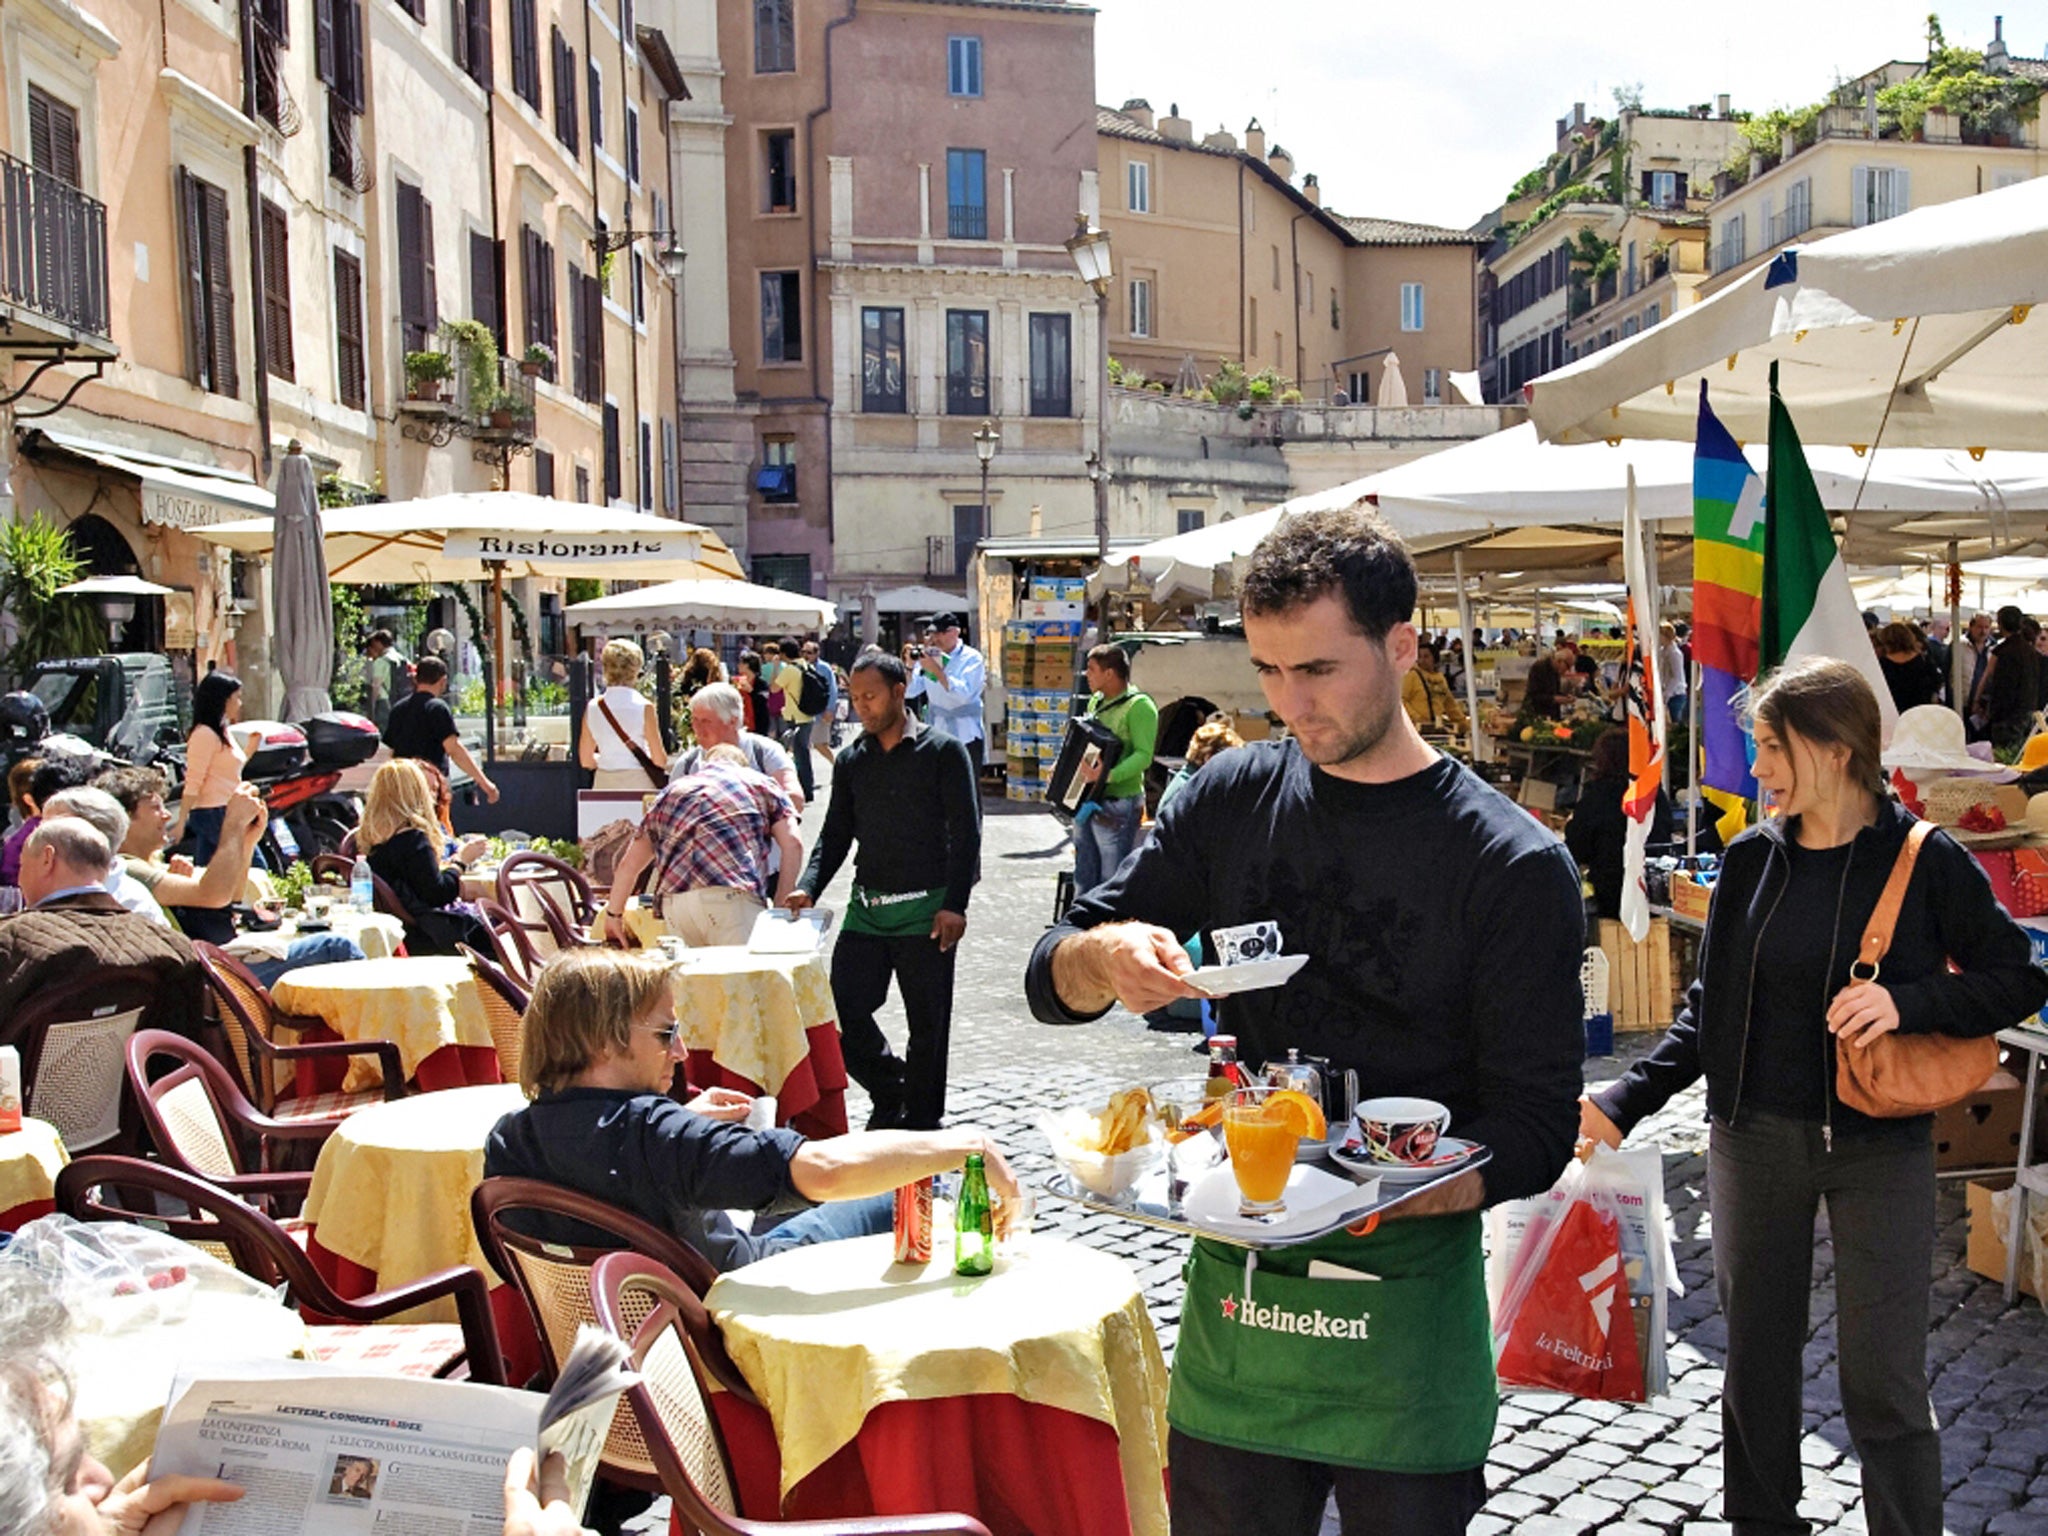 Square meal: diners in the Campo de Fiori in Rome